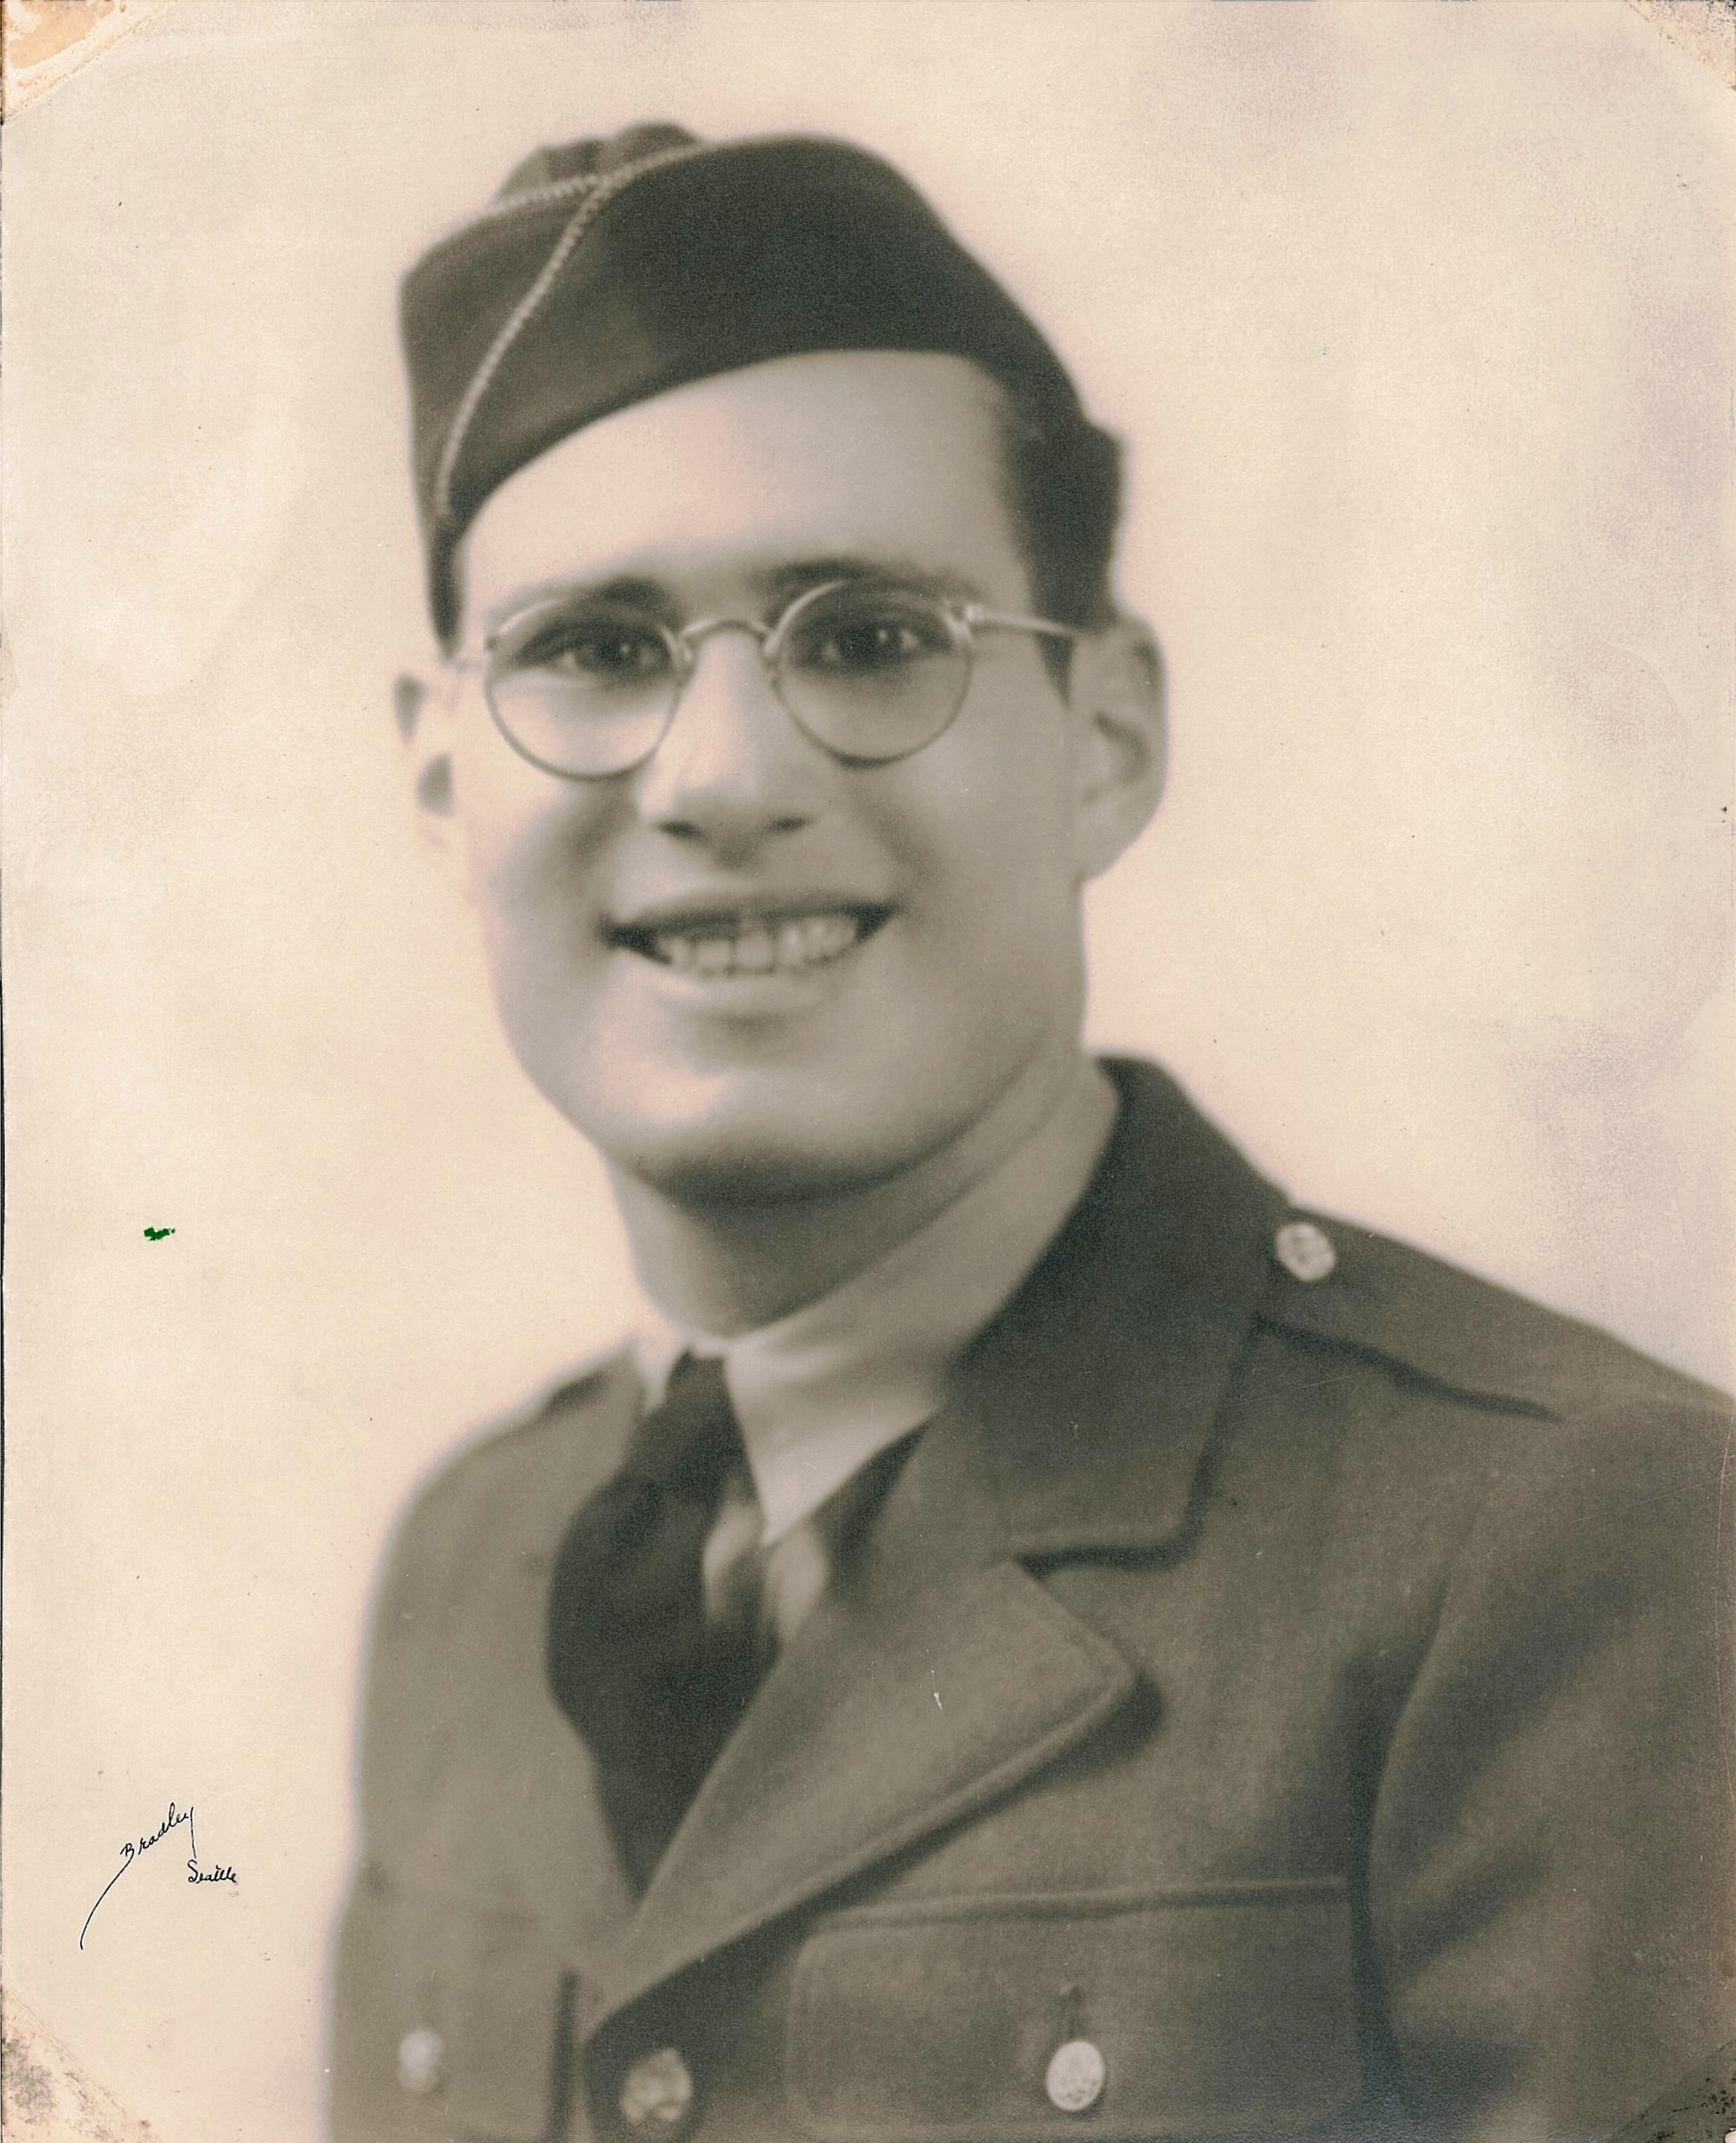 Dad WW II Service Photo.jpeg